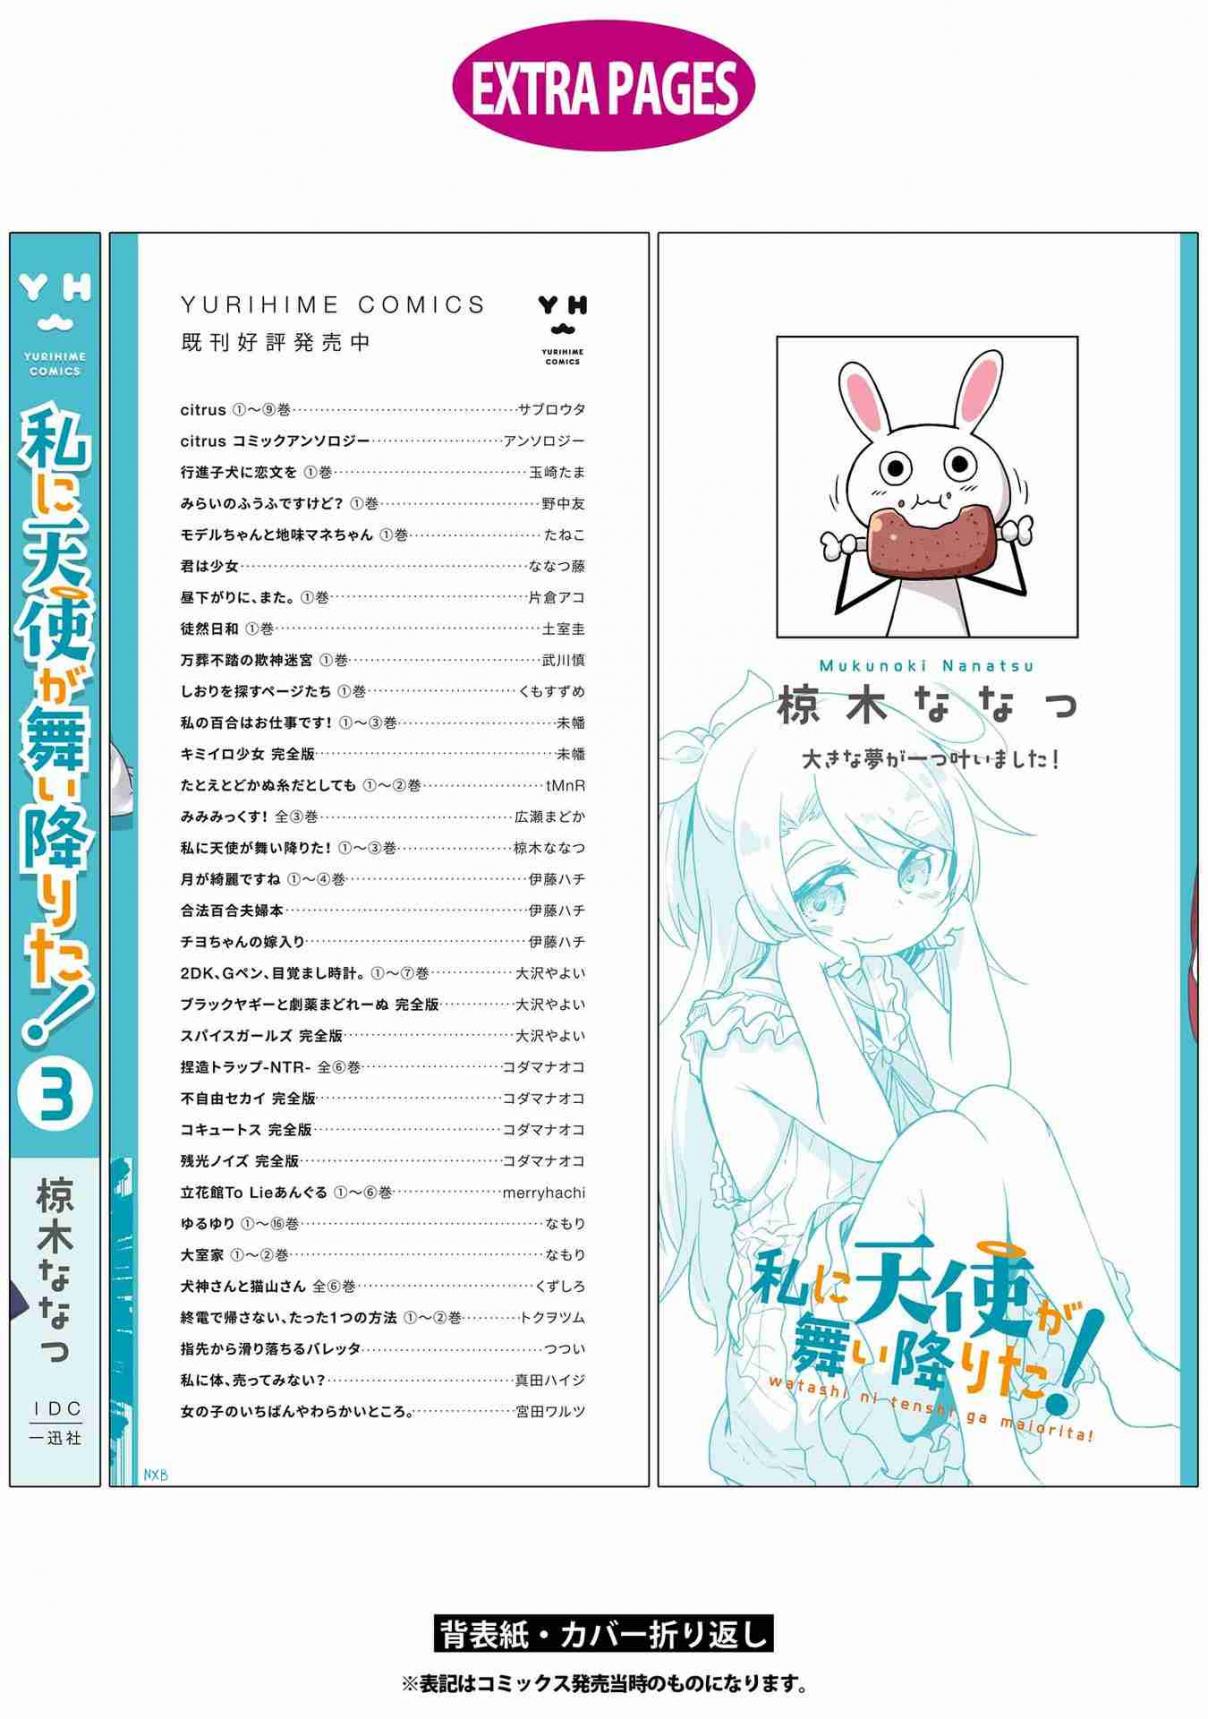 Watashi ni Tenshi ga Maiorita! Vol. 3 29.5